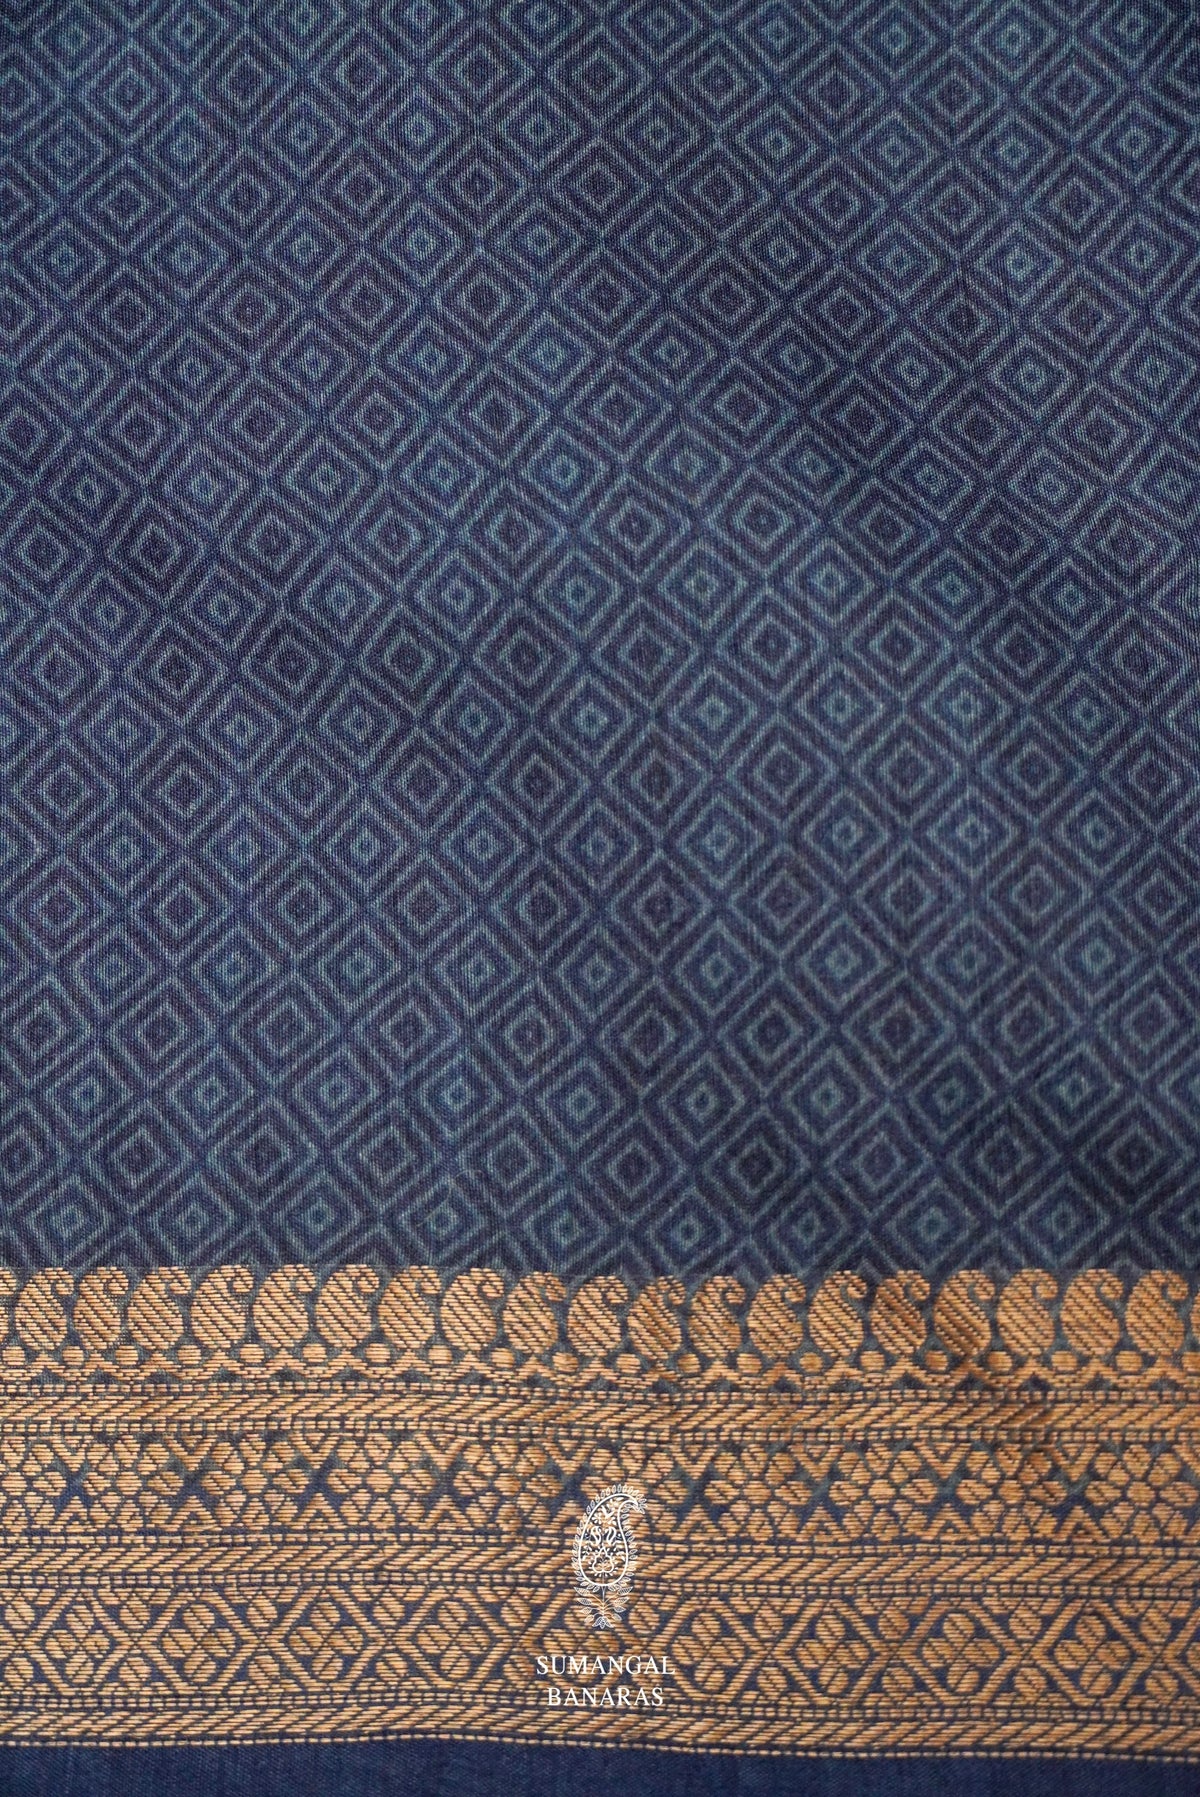 Handwoven Teal Blue Banarasi Tussar Silk Saree